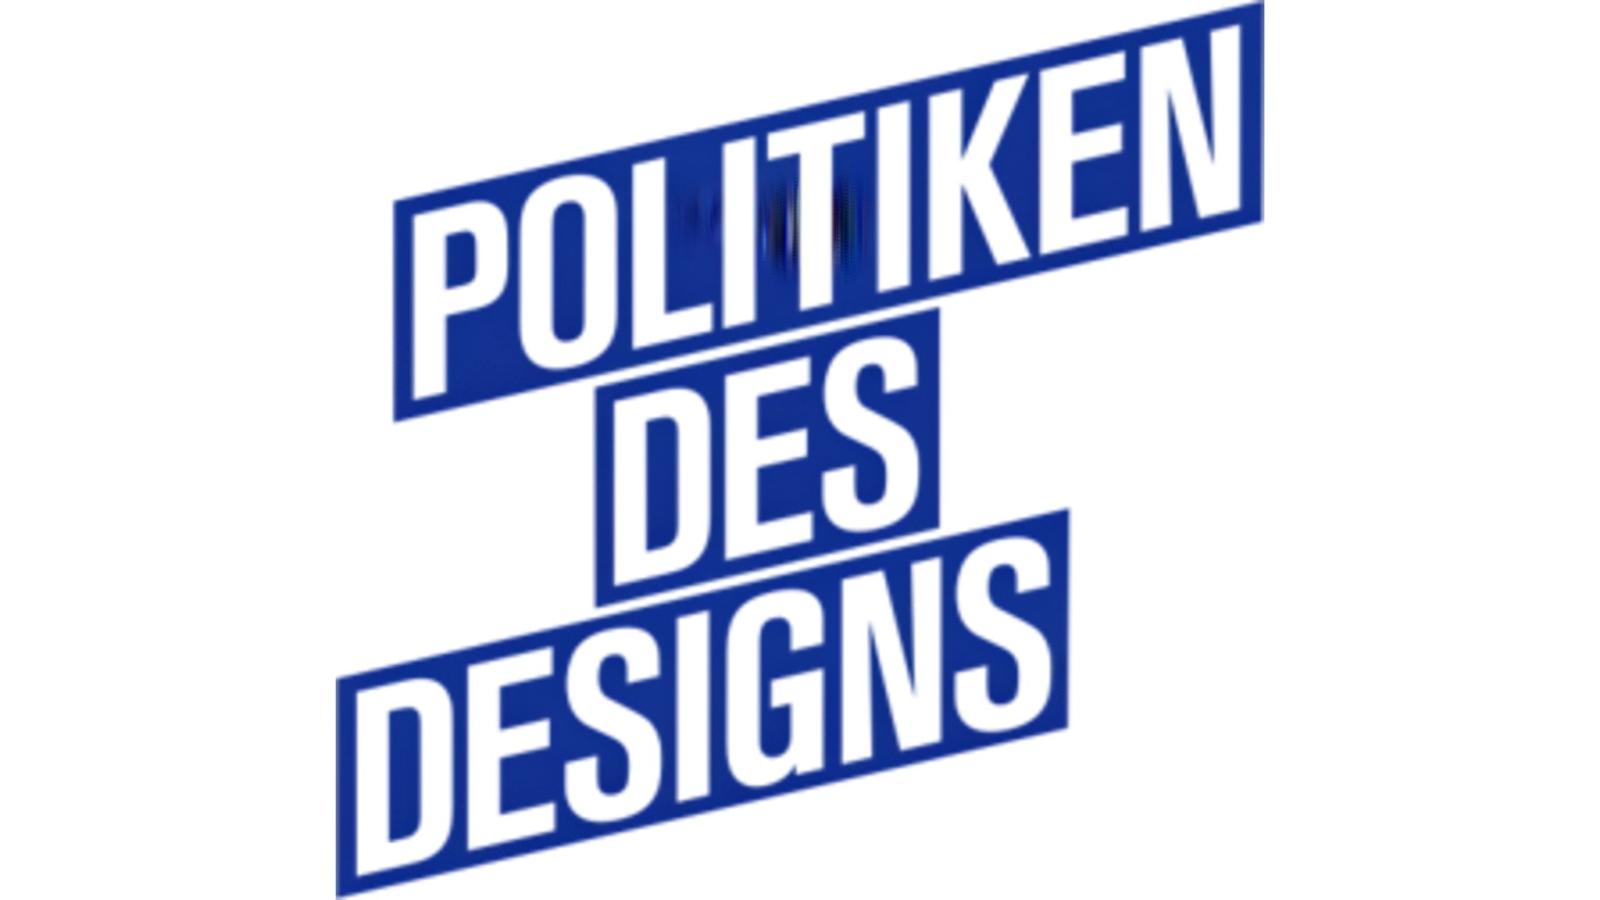 Logo der Projektarbeit "Politiken des Designs"